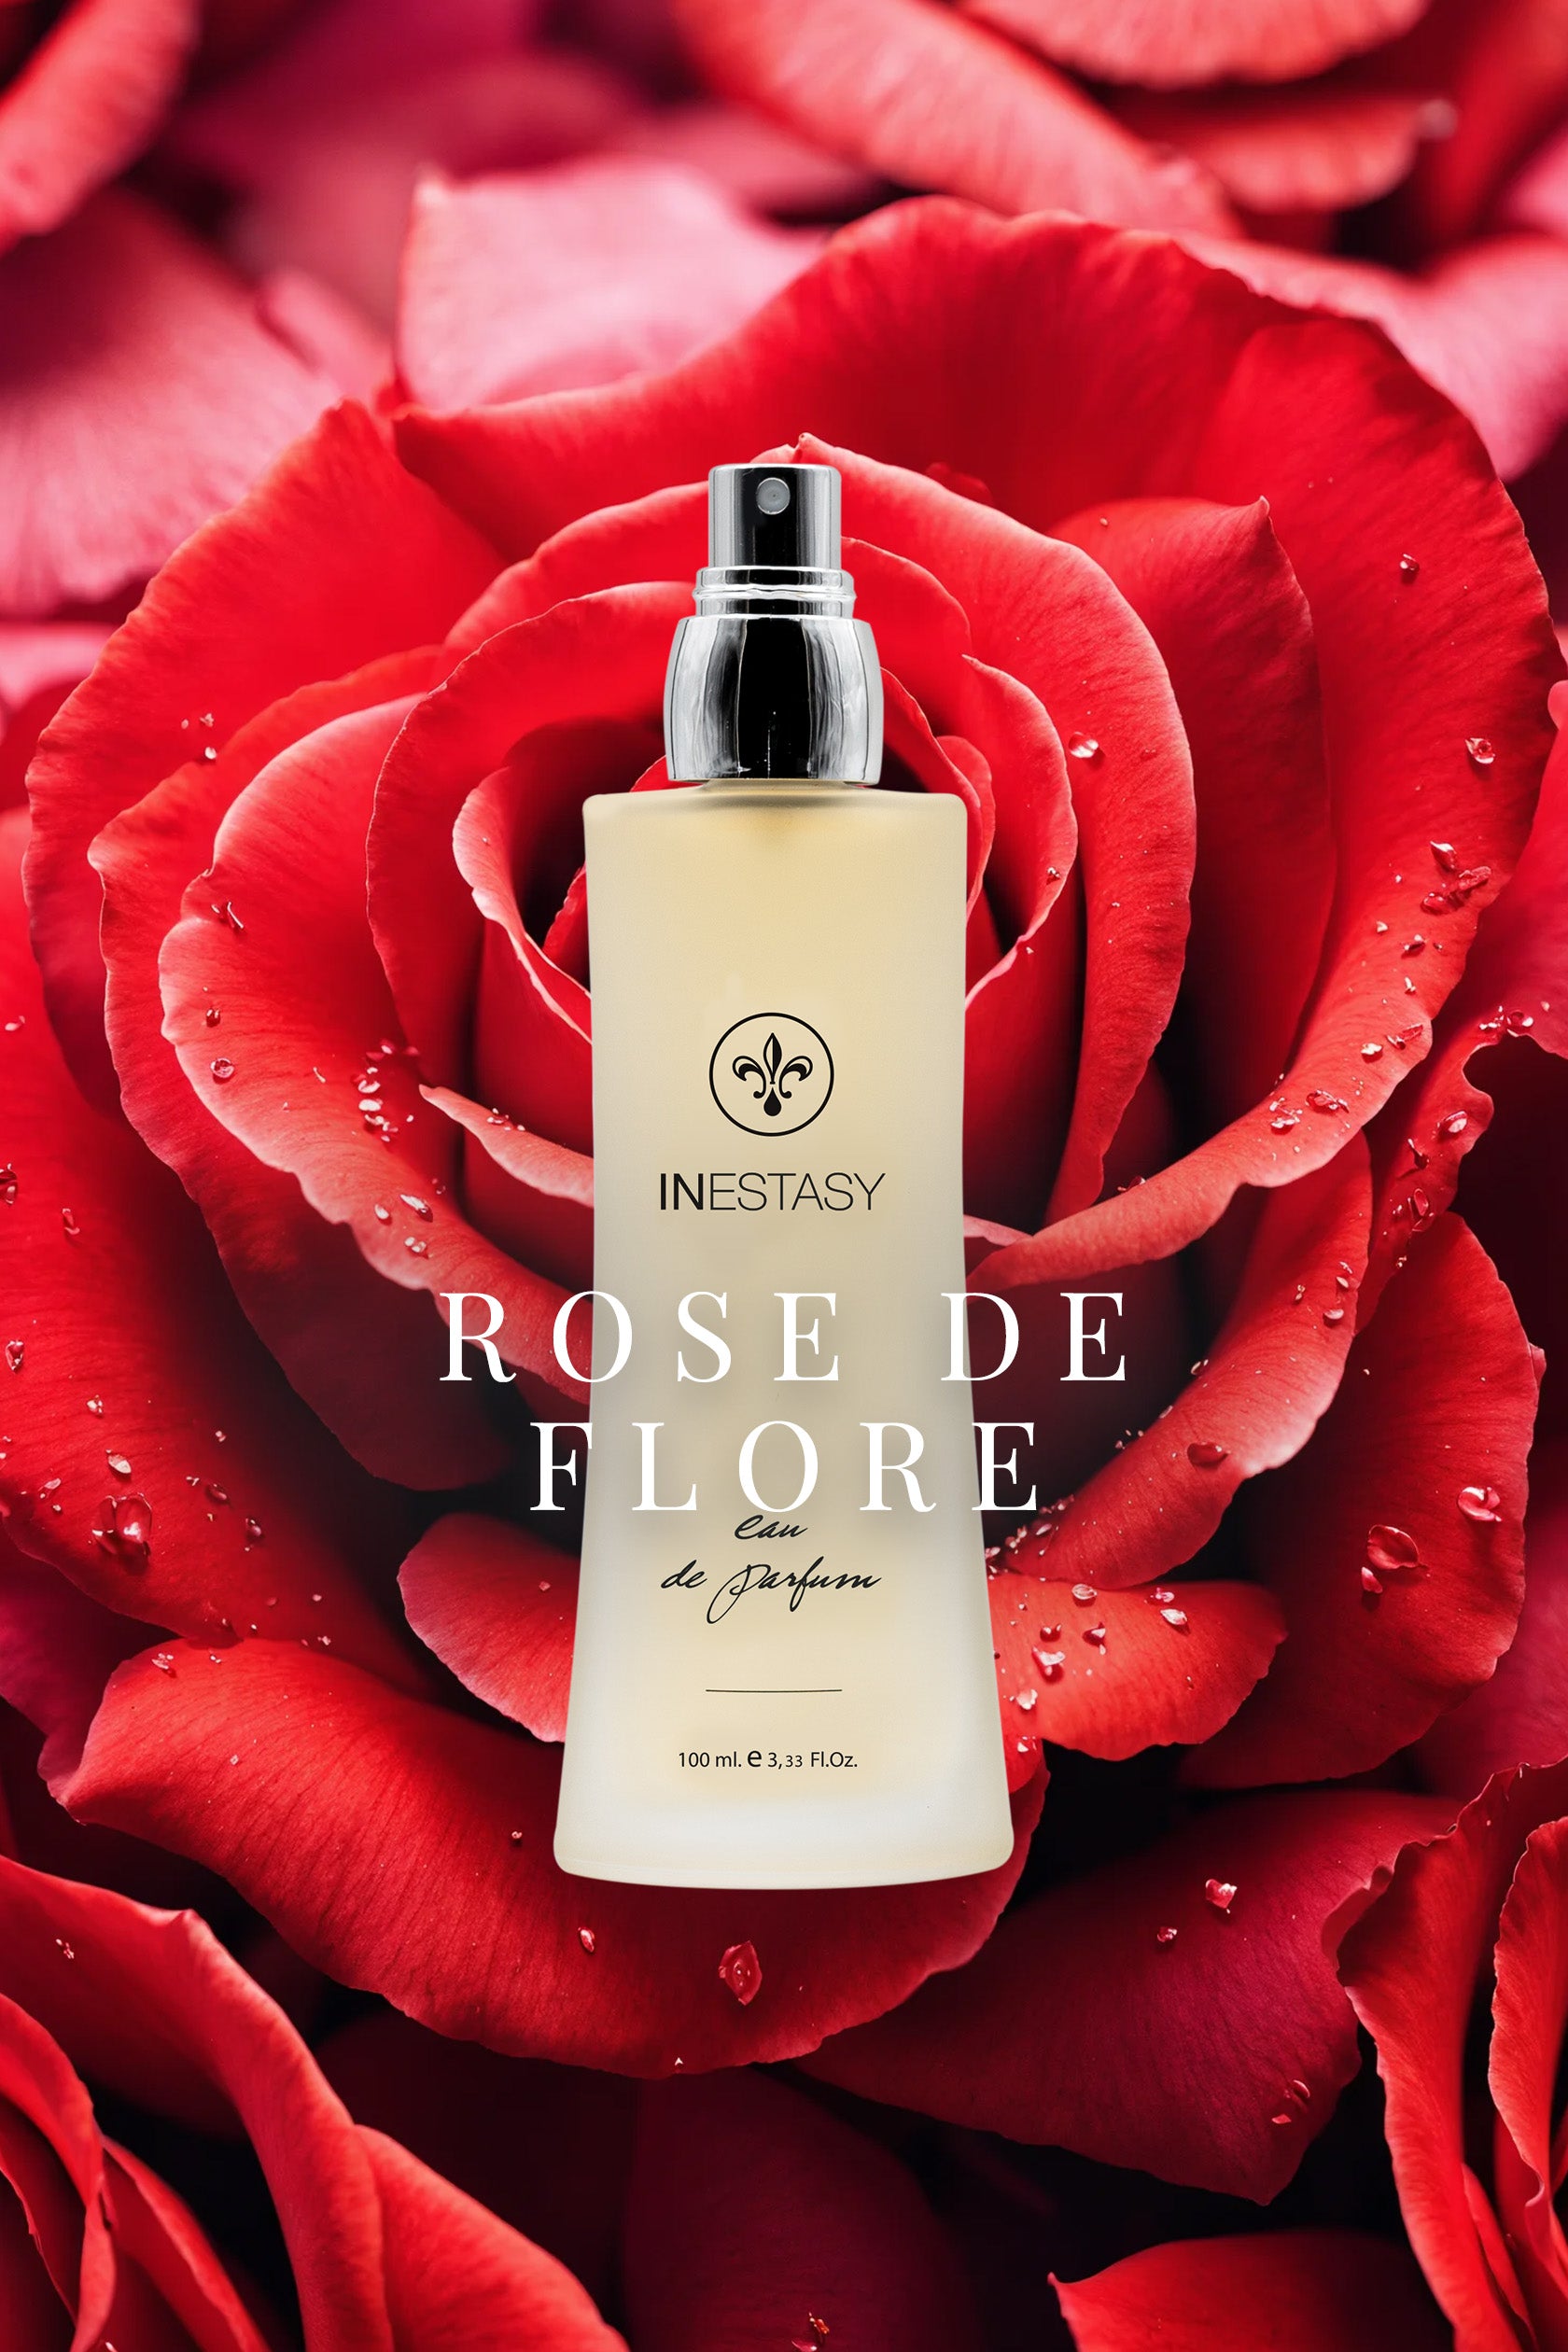 Profumo Equivalente Inestasy Rose De Flore Montale Rose Musk - Profumi-Inestasy, rose musk, homage